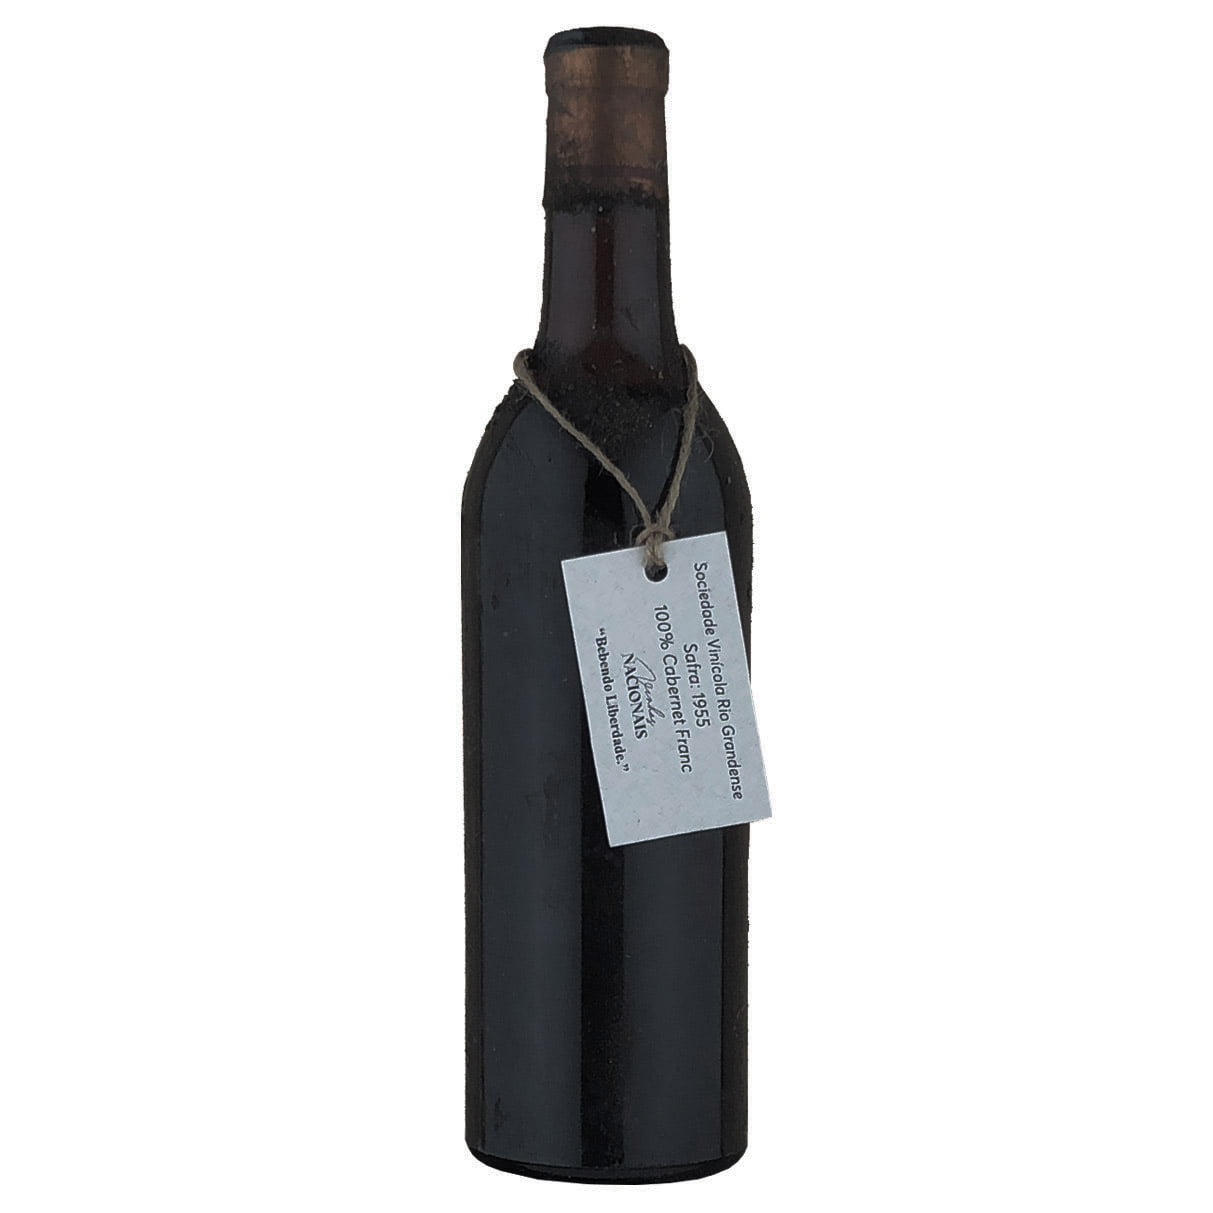 Sociedade Cooperativa Vinícola Rio-grandense Cabernet Franc 1955 - Vinho Antigo